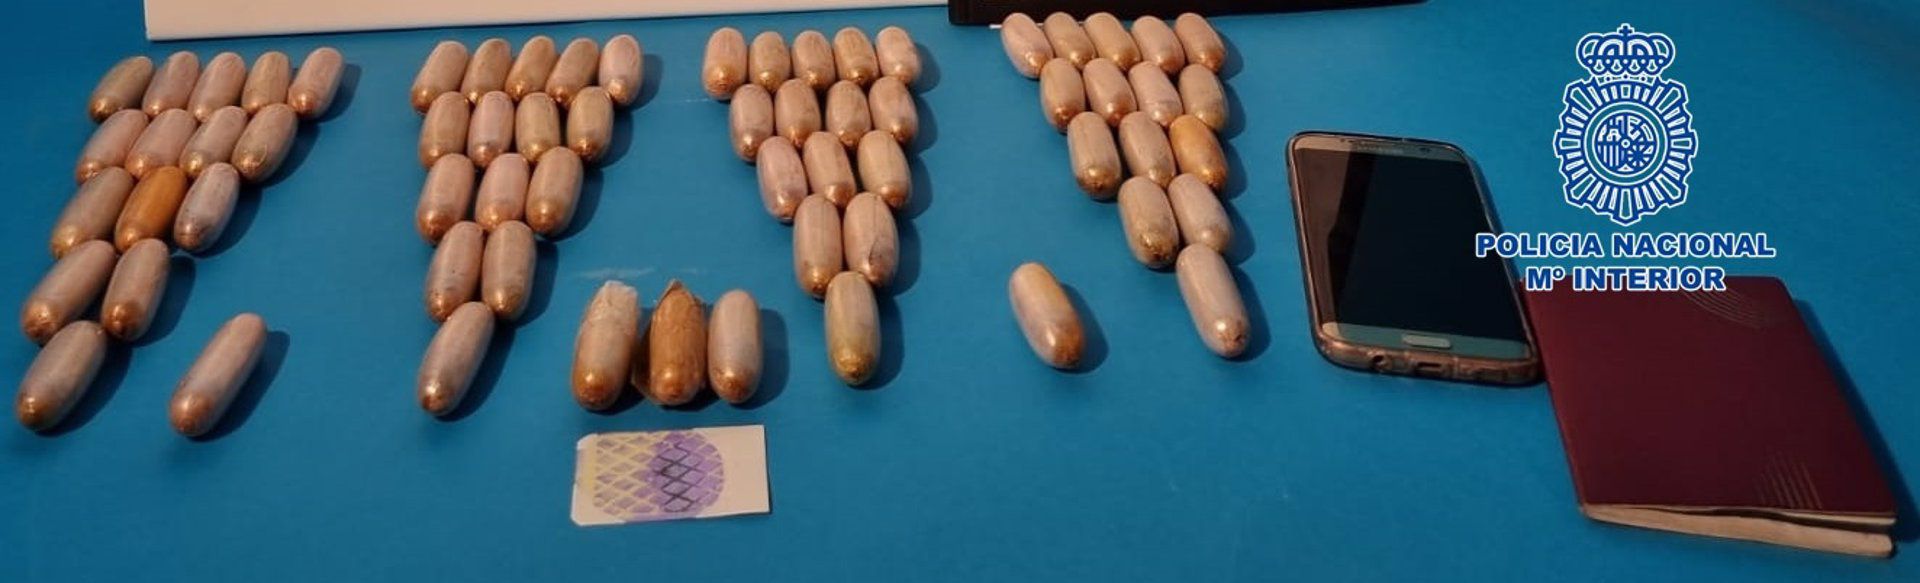 Detenido un mulero con 65 cápsulas de heroína cuando deambulaba por una calle de Arrecife (Lanzarote)